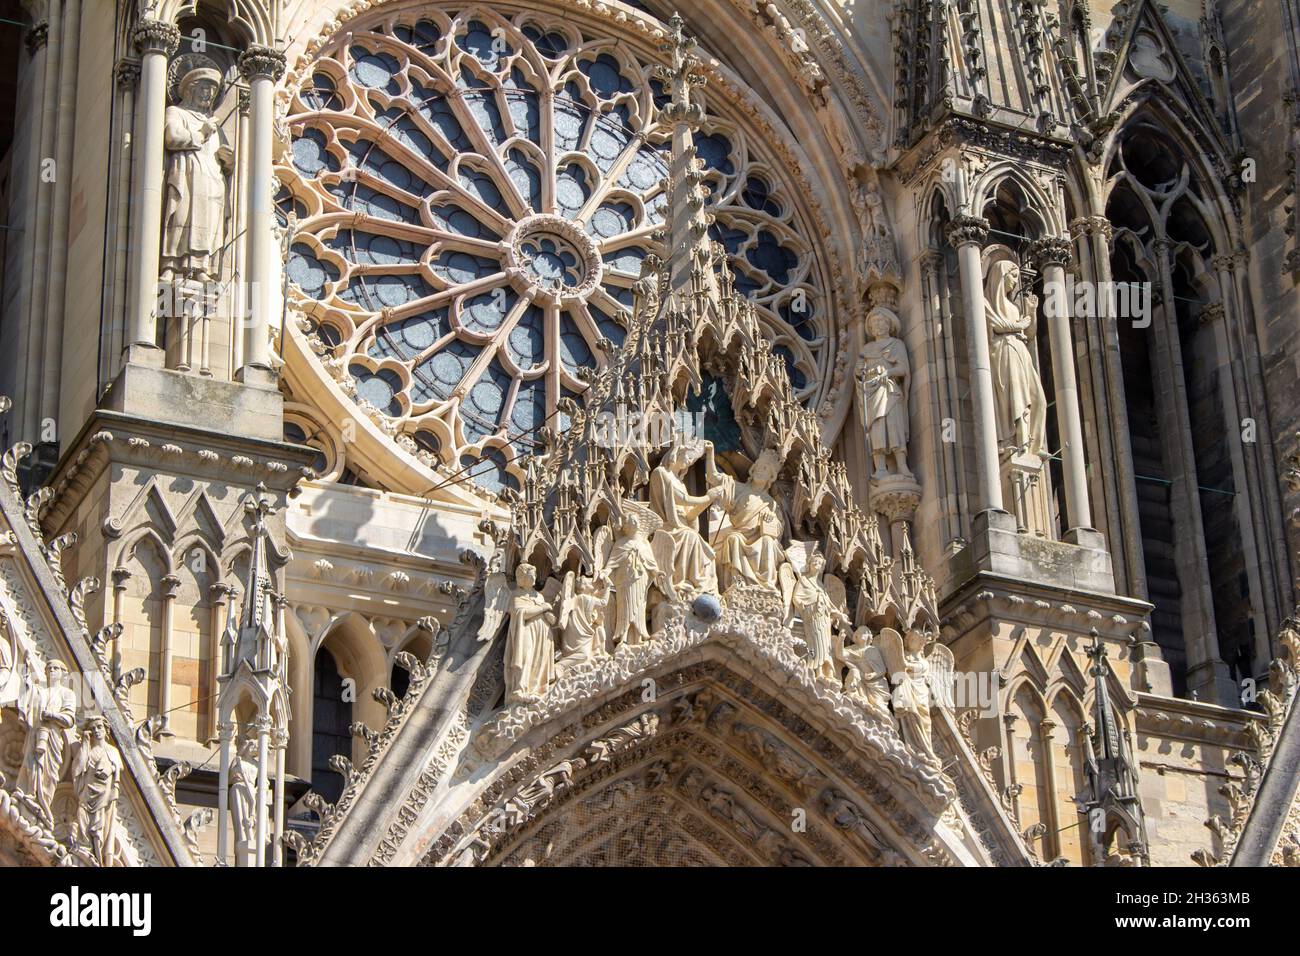 Vista ravvicinata della cattedrale medievale di nostra Signora di Reims in Francia, con architettura gotica alta, che mostra il suo rosone centrale Foto Stock